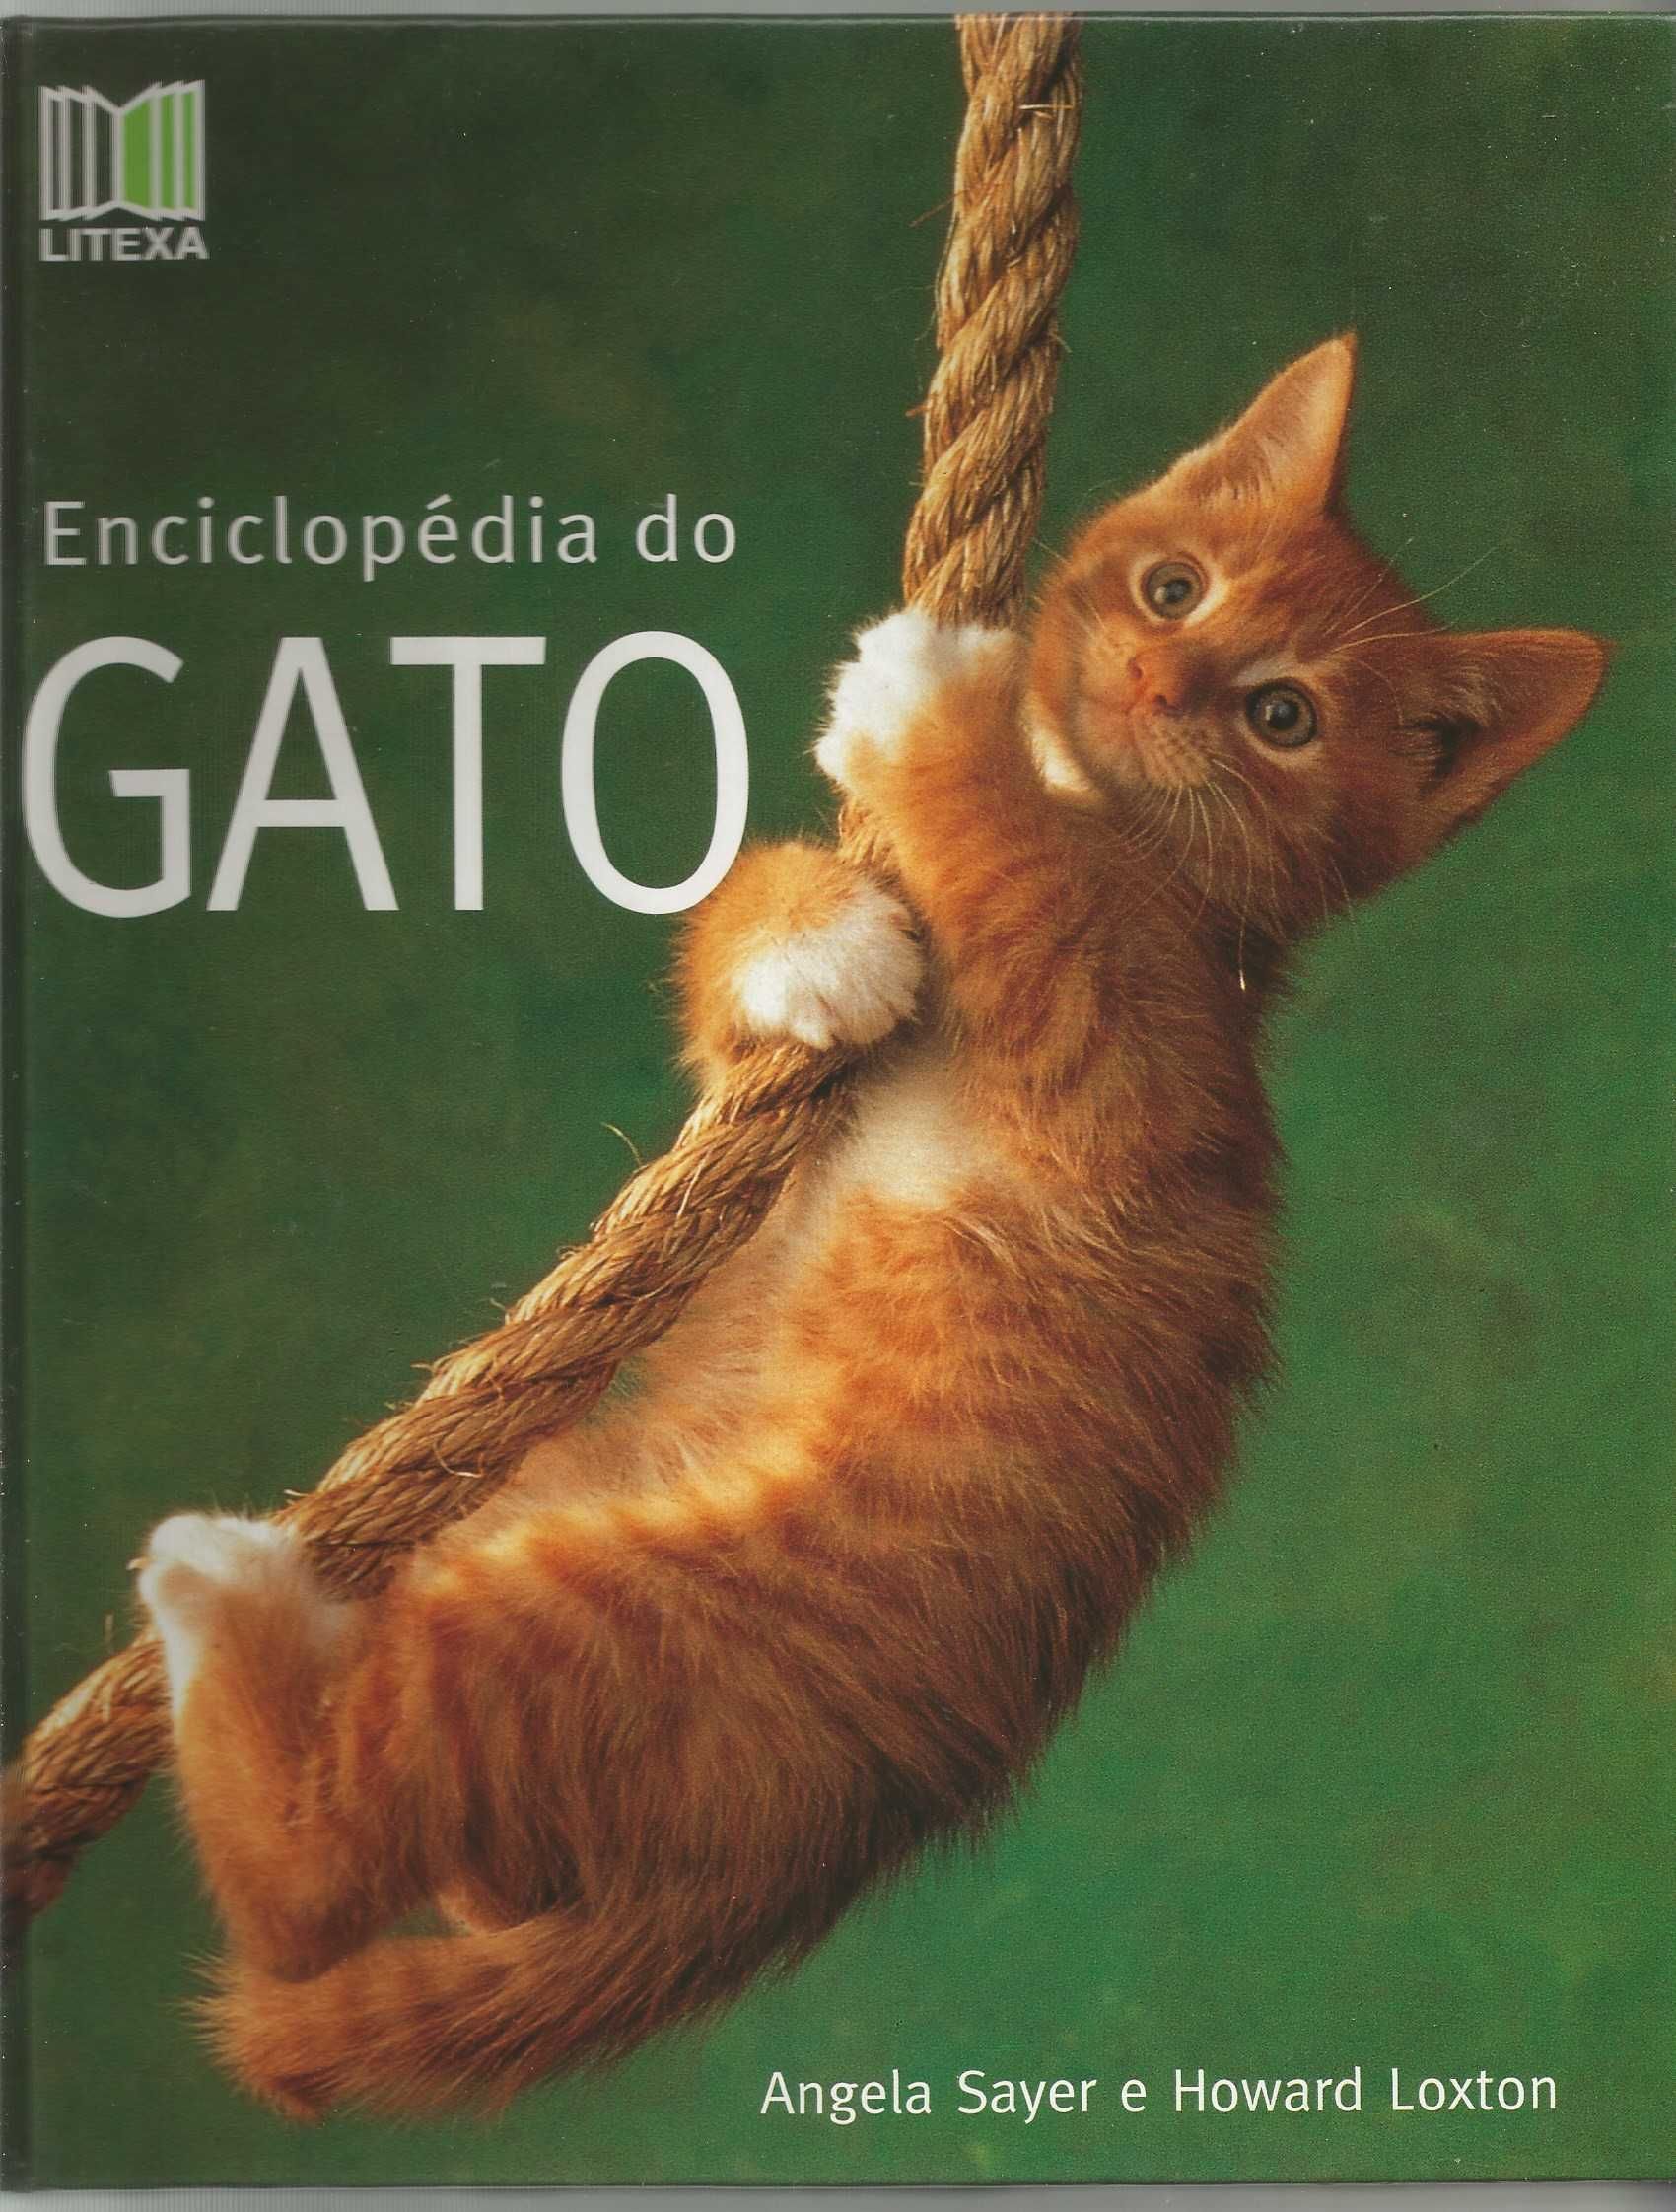 Enciclopédia do Gato - Angela Sayer e Howard Loxton